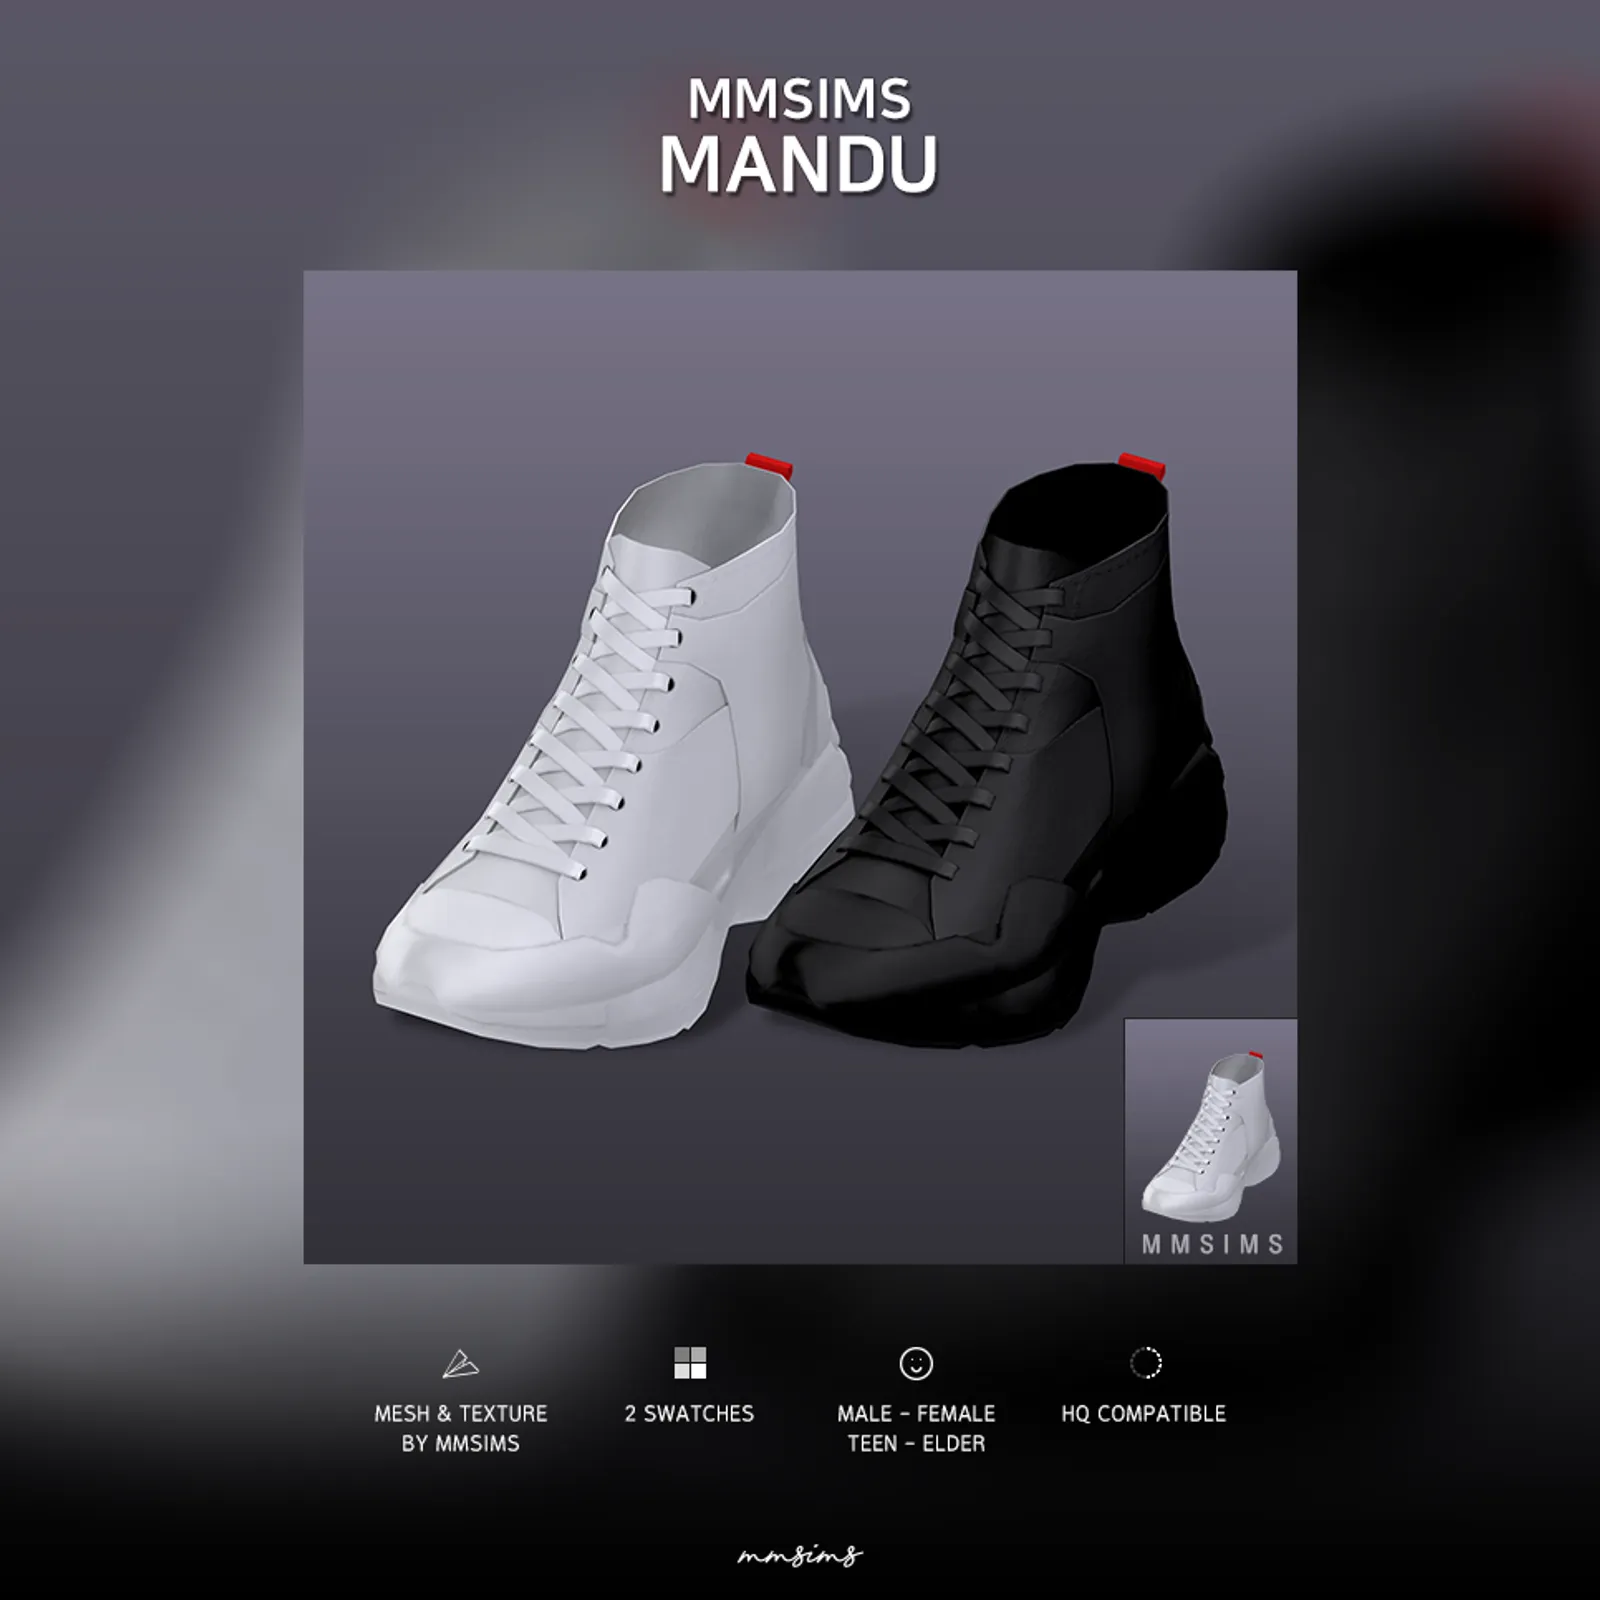 MMSIMS Mandu Sneakers